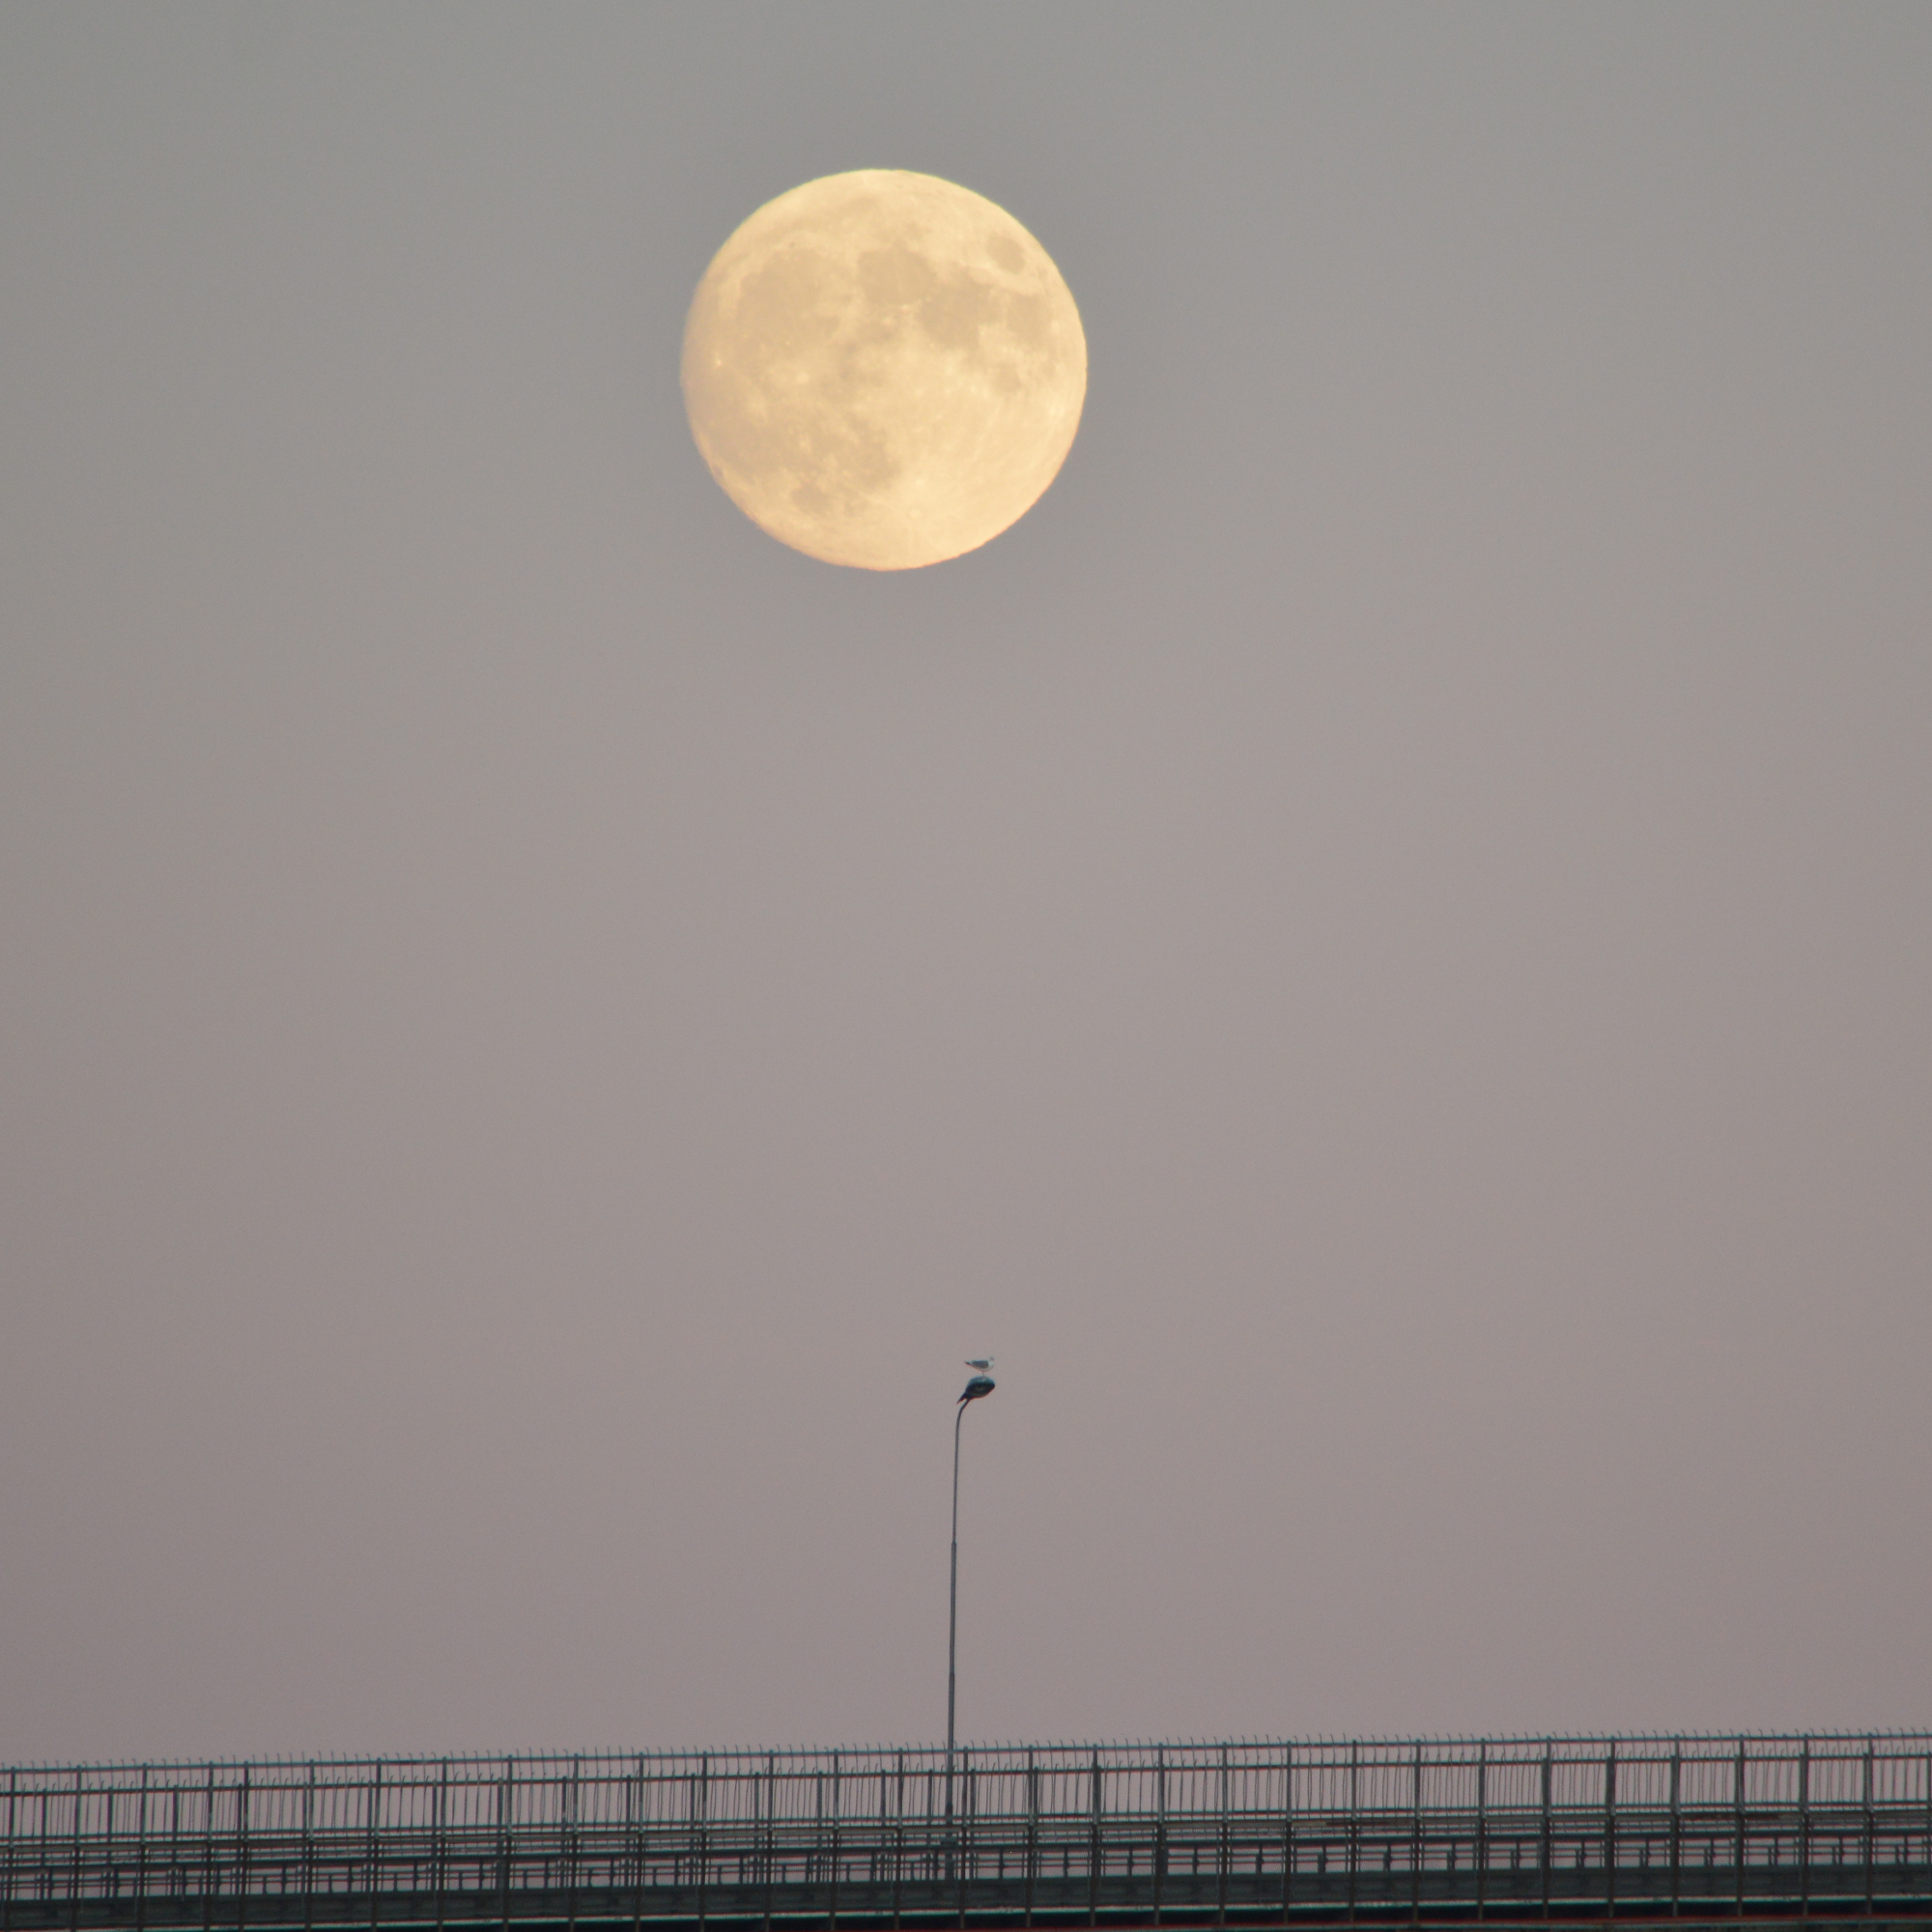 20180130_full_moon_over_Tromso_Bridge_PJW.jpg